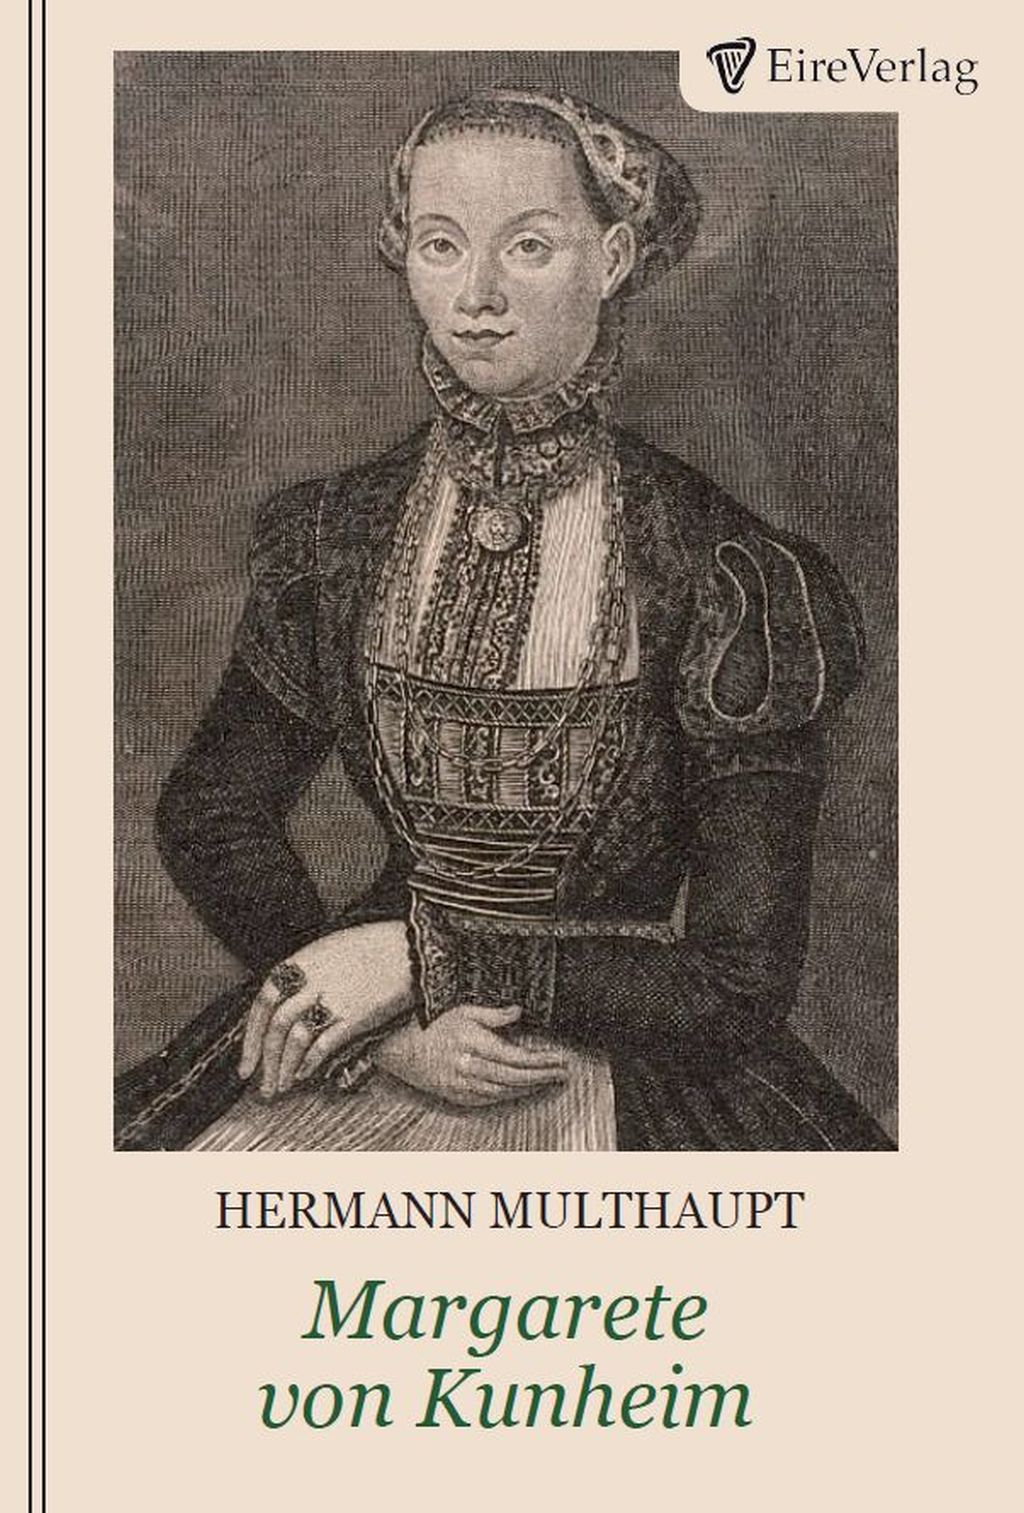 Margarete von Kunheim - Die jüngste Tochter von Martin Luther und Katharina von Bora - Hermann Multhaupt